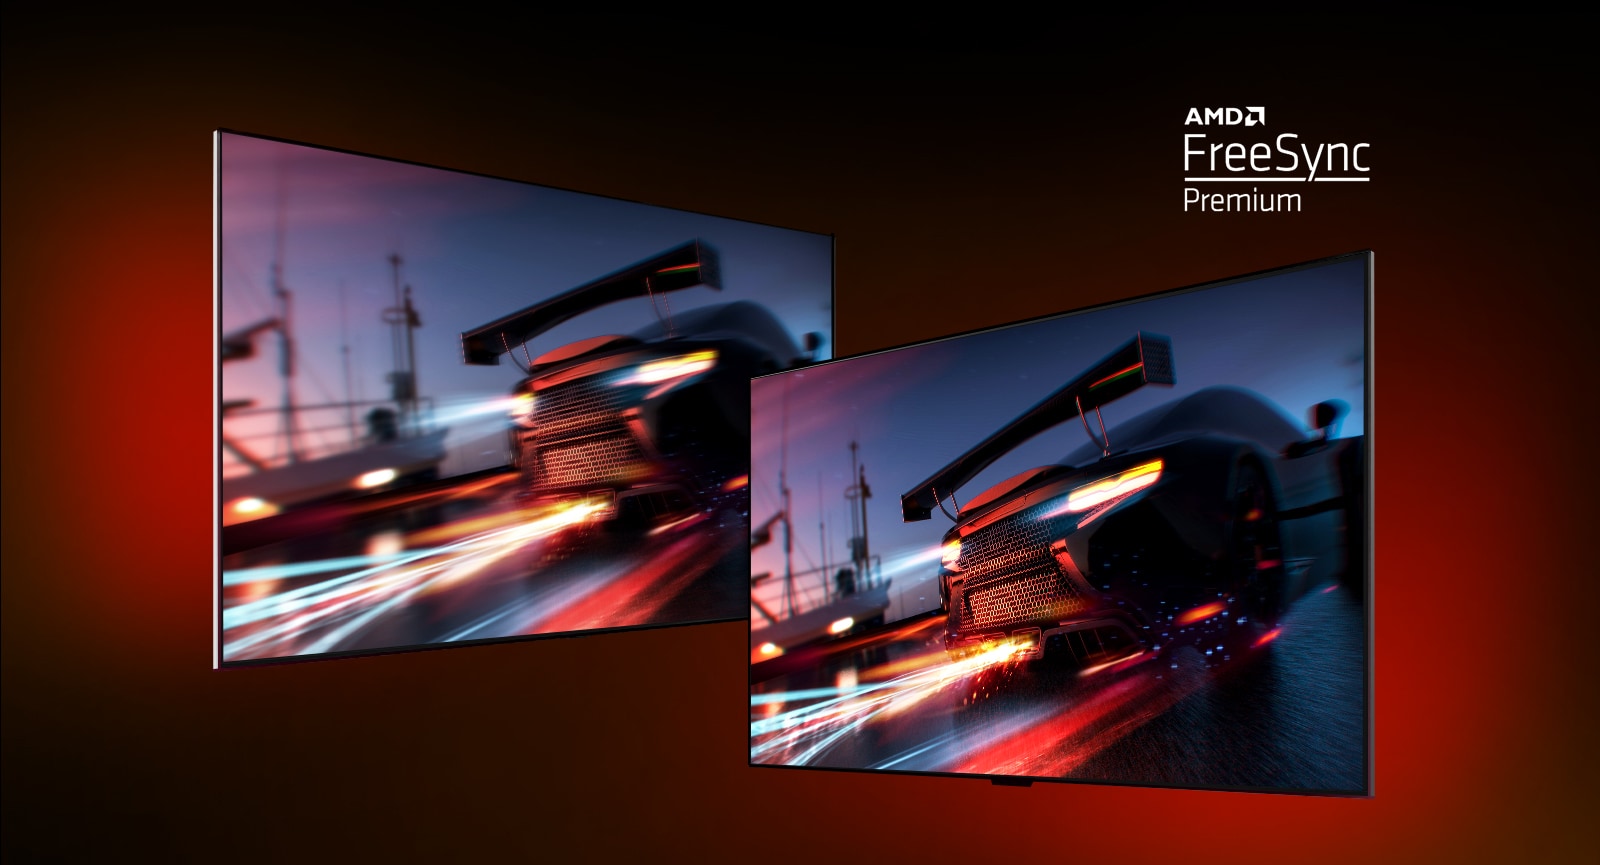 Er zijn twee tv's - links is een FORTNITE-spelscène te zien met een raceauto. Rechts is ook dezelfde spelscène te zien, maar dan in een helderder en duidelijker beeldweergave. In de rechterbovenhoek staat het AMD FreeSync premium logo.  